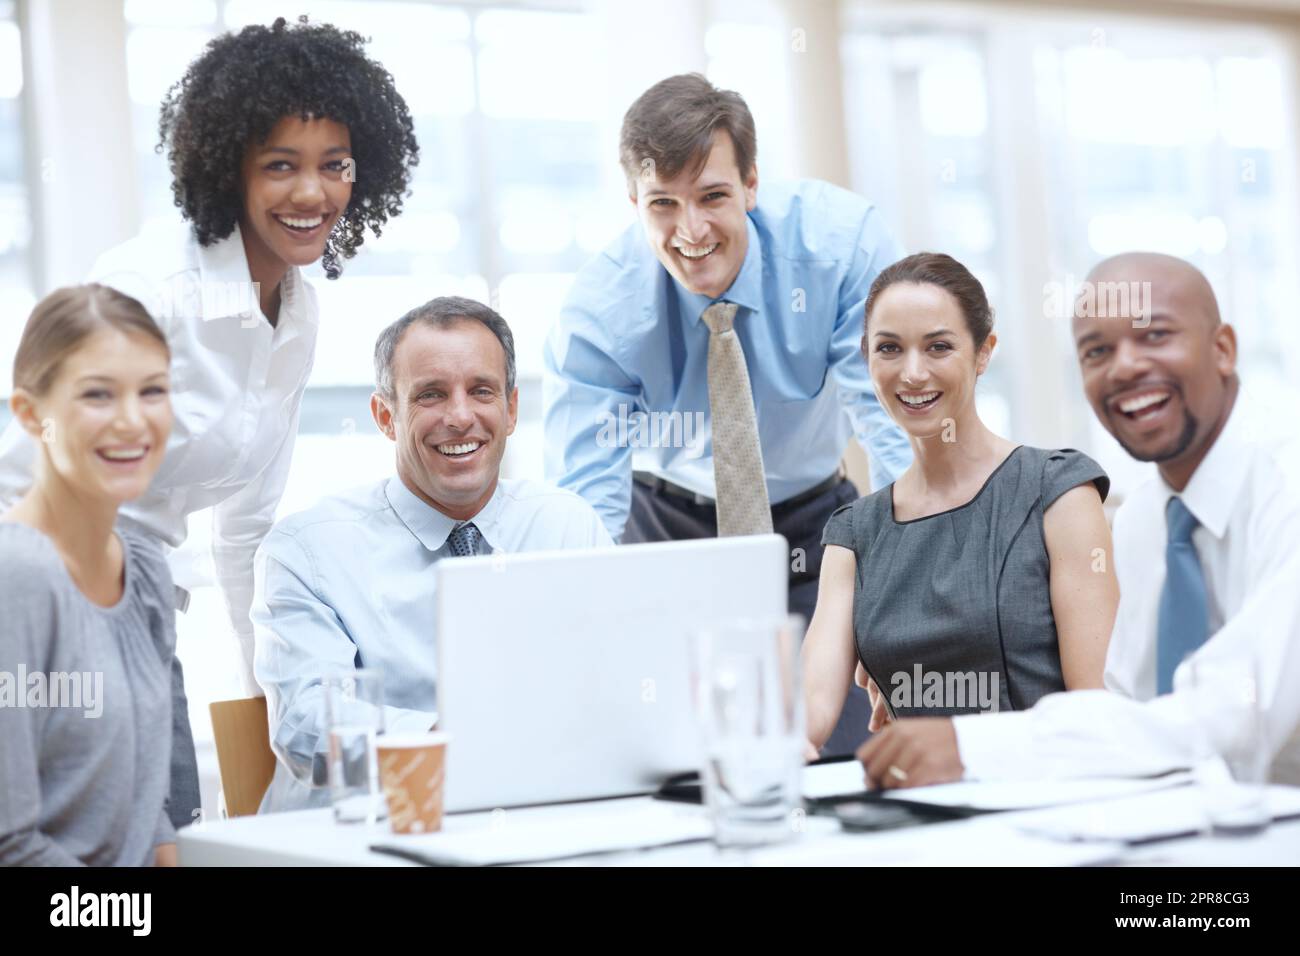 Theyre un team di affari riuscito. Ritratto di un gruppo multietnico di uomini d'affari in una riunione. Foto Stock